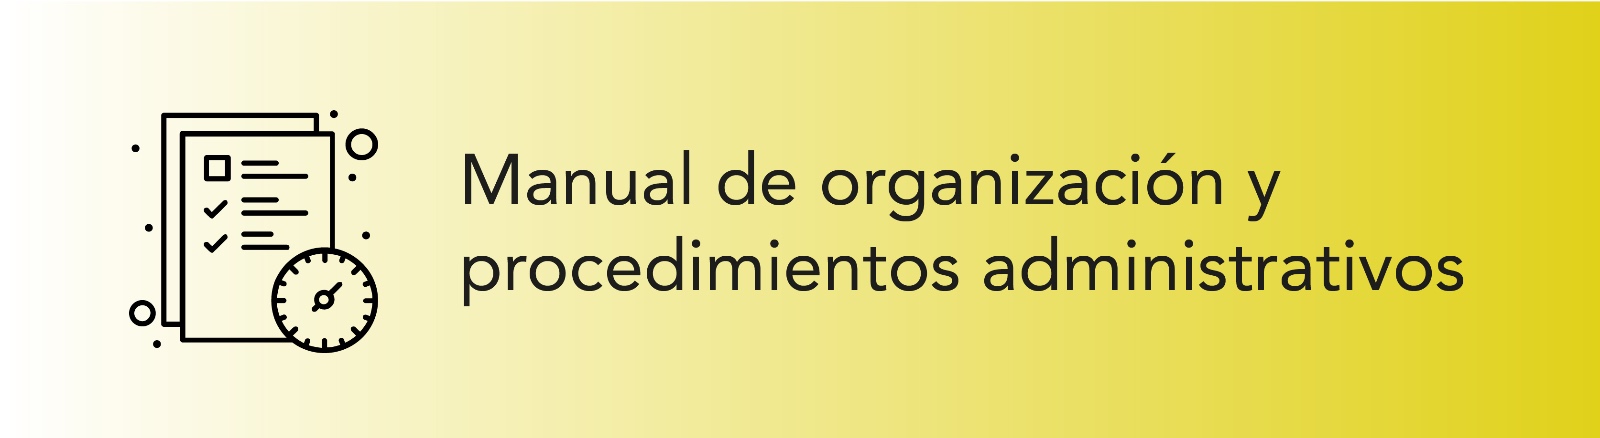 Imagen que permite conocer el Manual de Organización y Procedimientos Administrativos